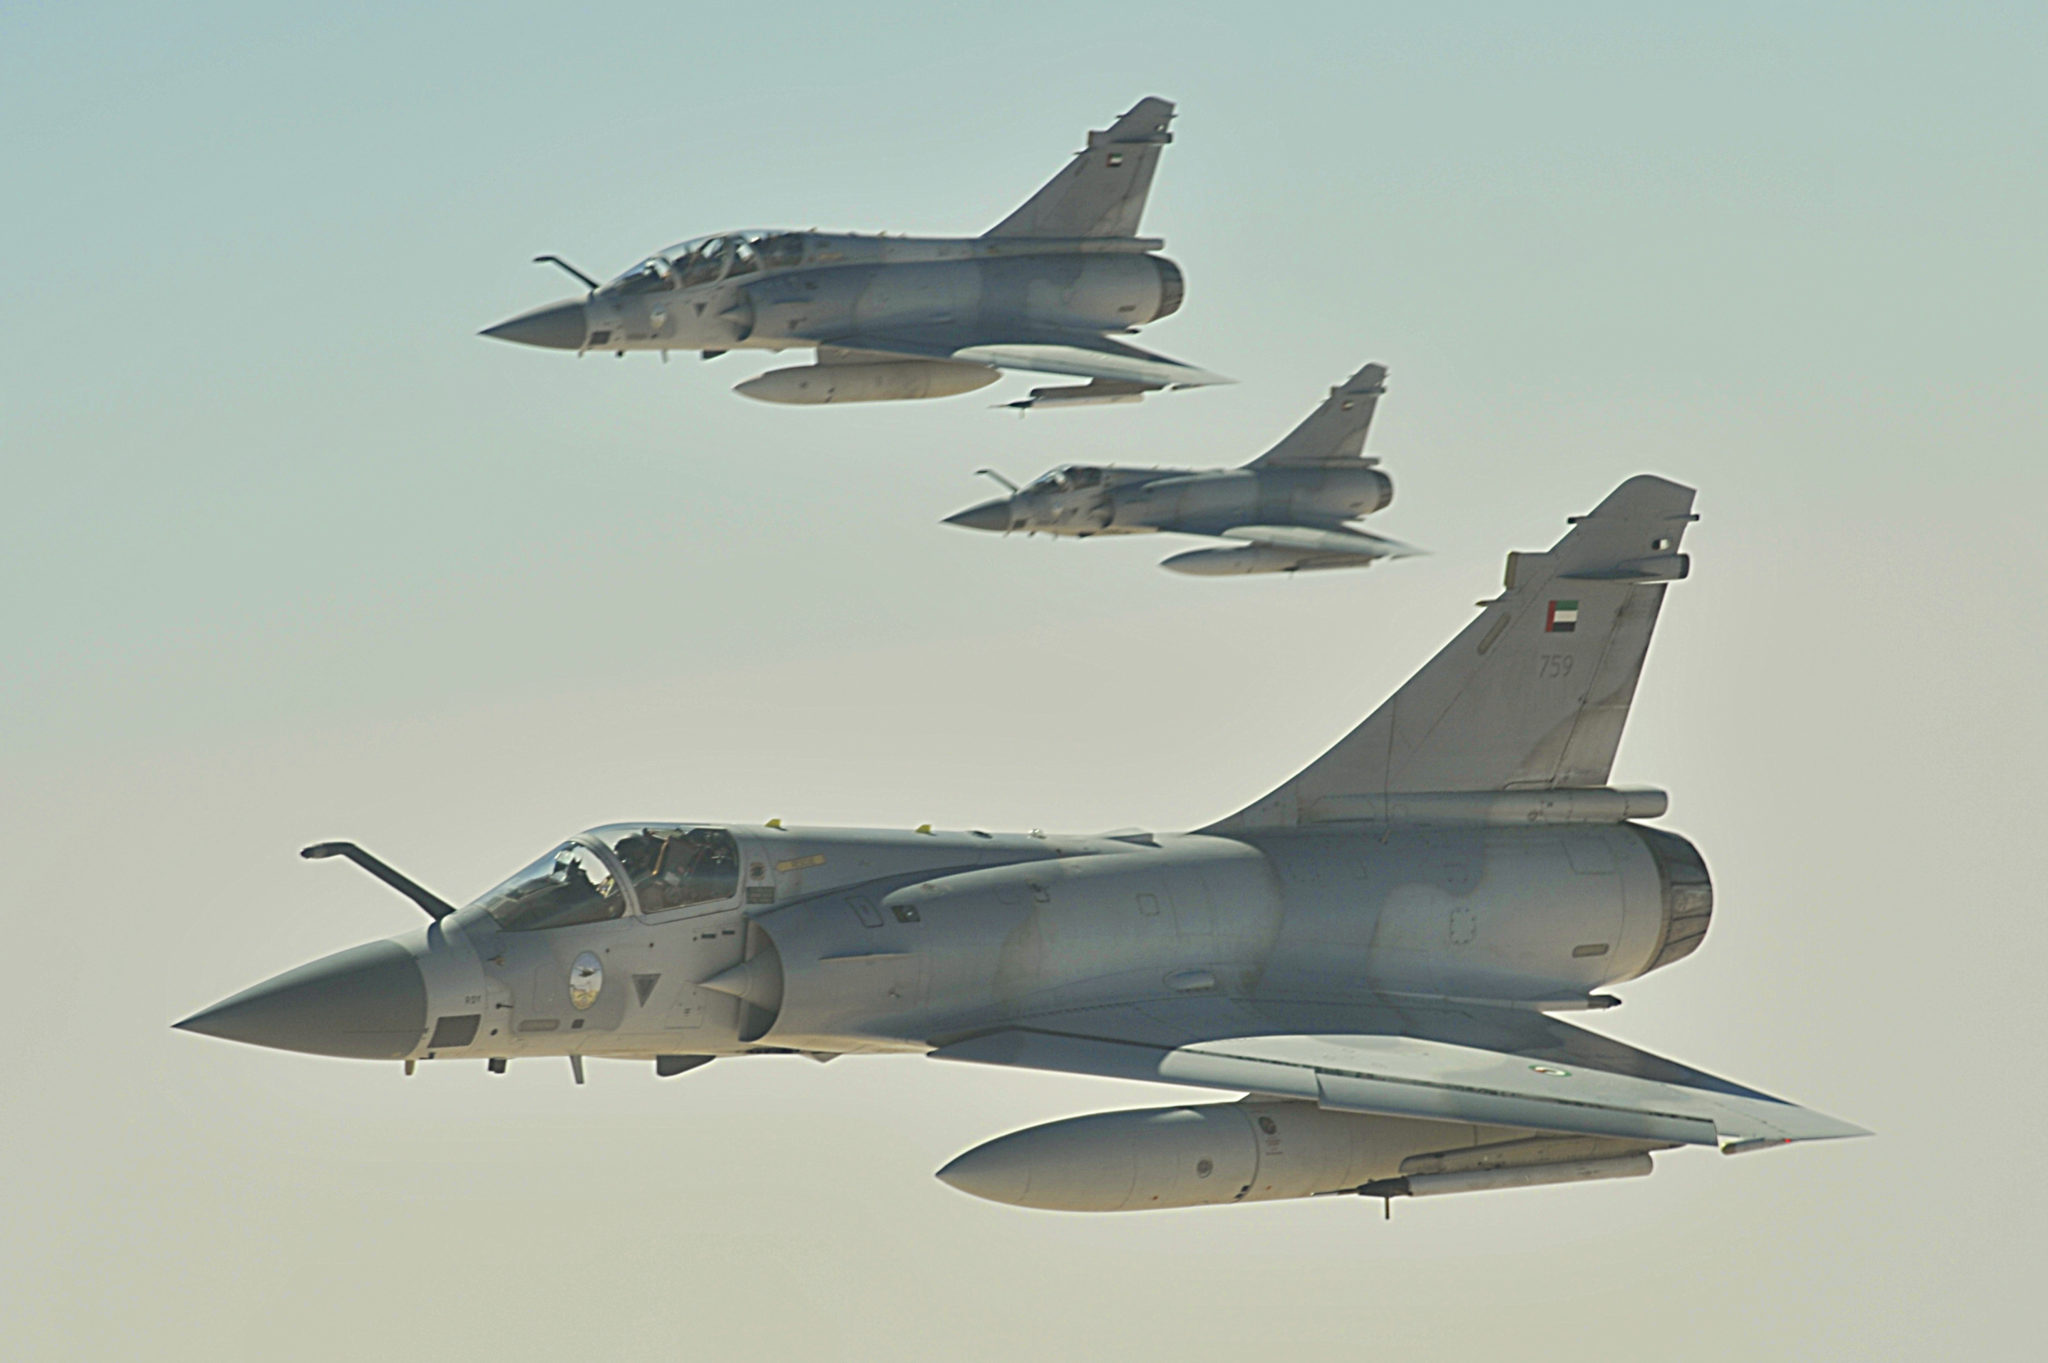 Los modernos Mirage 2000-9 de Emirados Arabes Unidos - ¿una oportunidade para la FAA? Emirate_Mirage_2000_jets-2048x1363